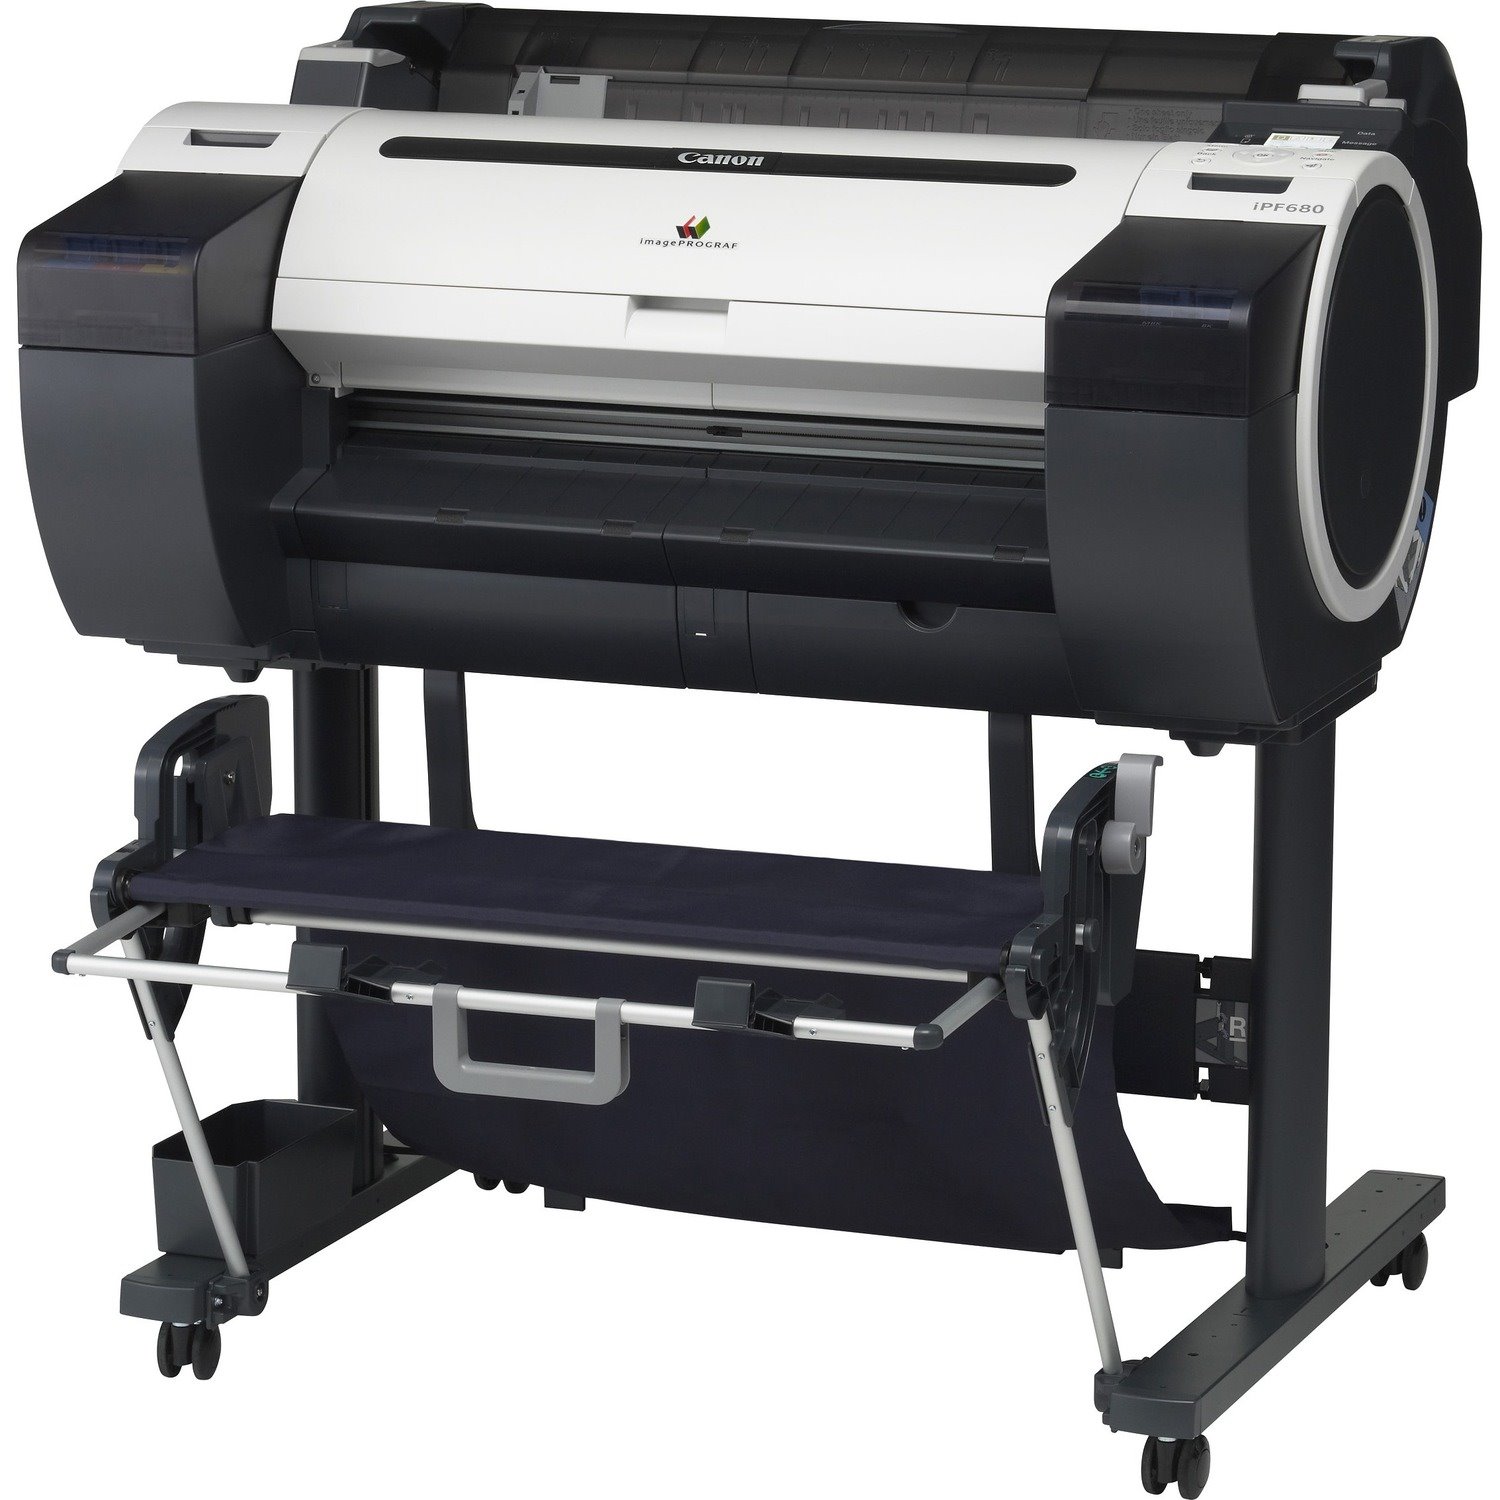 Canon imagePROGRAF iPF680 Inkjet Large Format Printer - 24.02" Print Width - Color